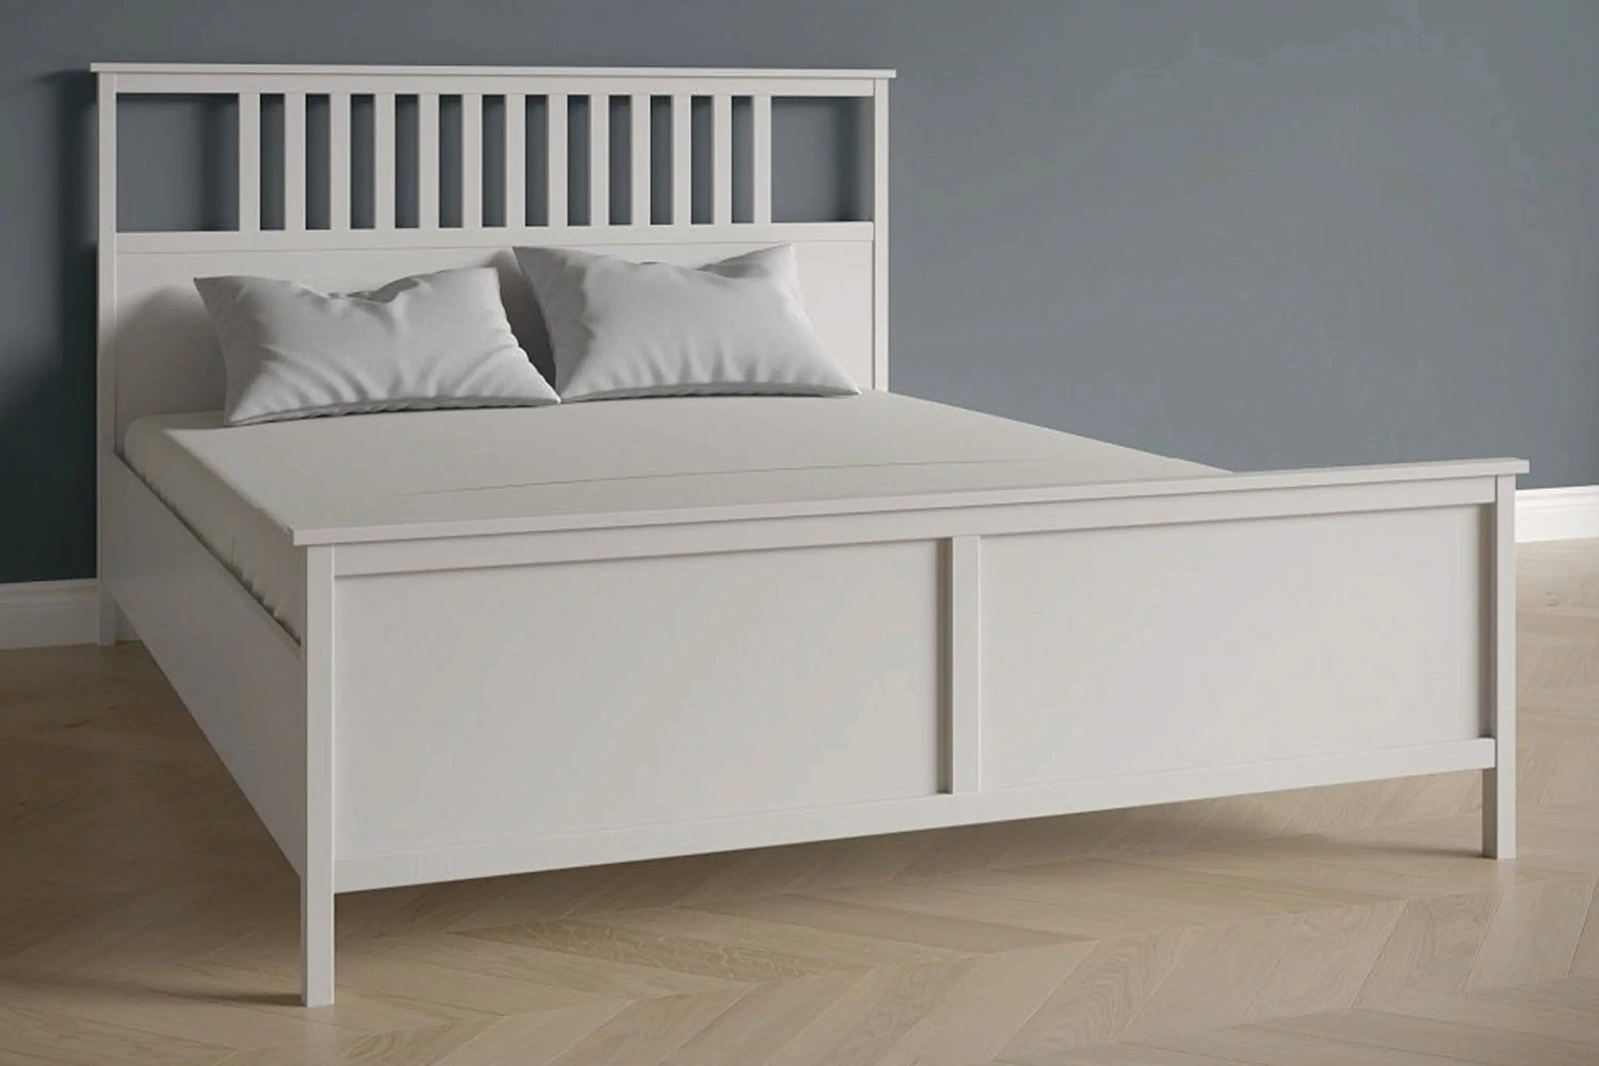 ФРЕЯ кровать NEW 160 см (белый)